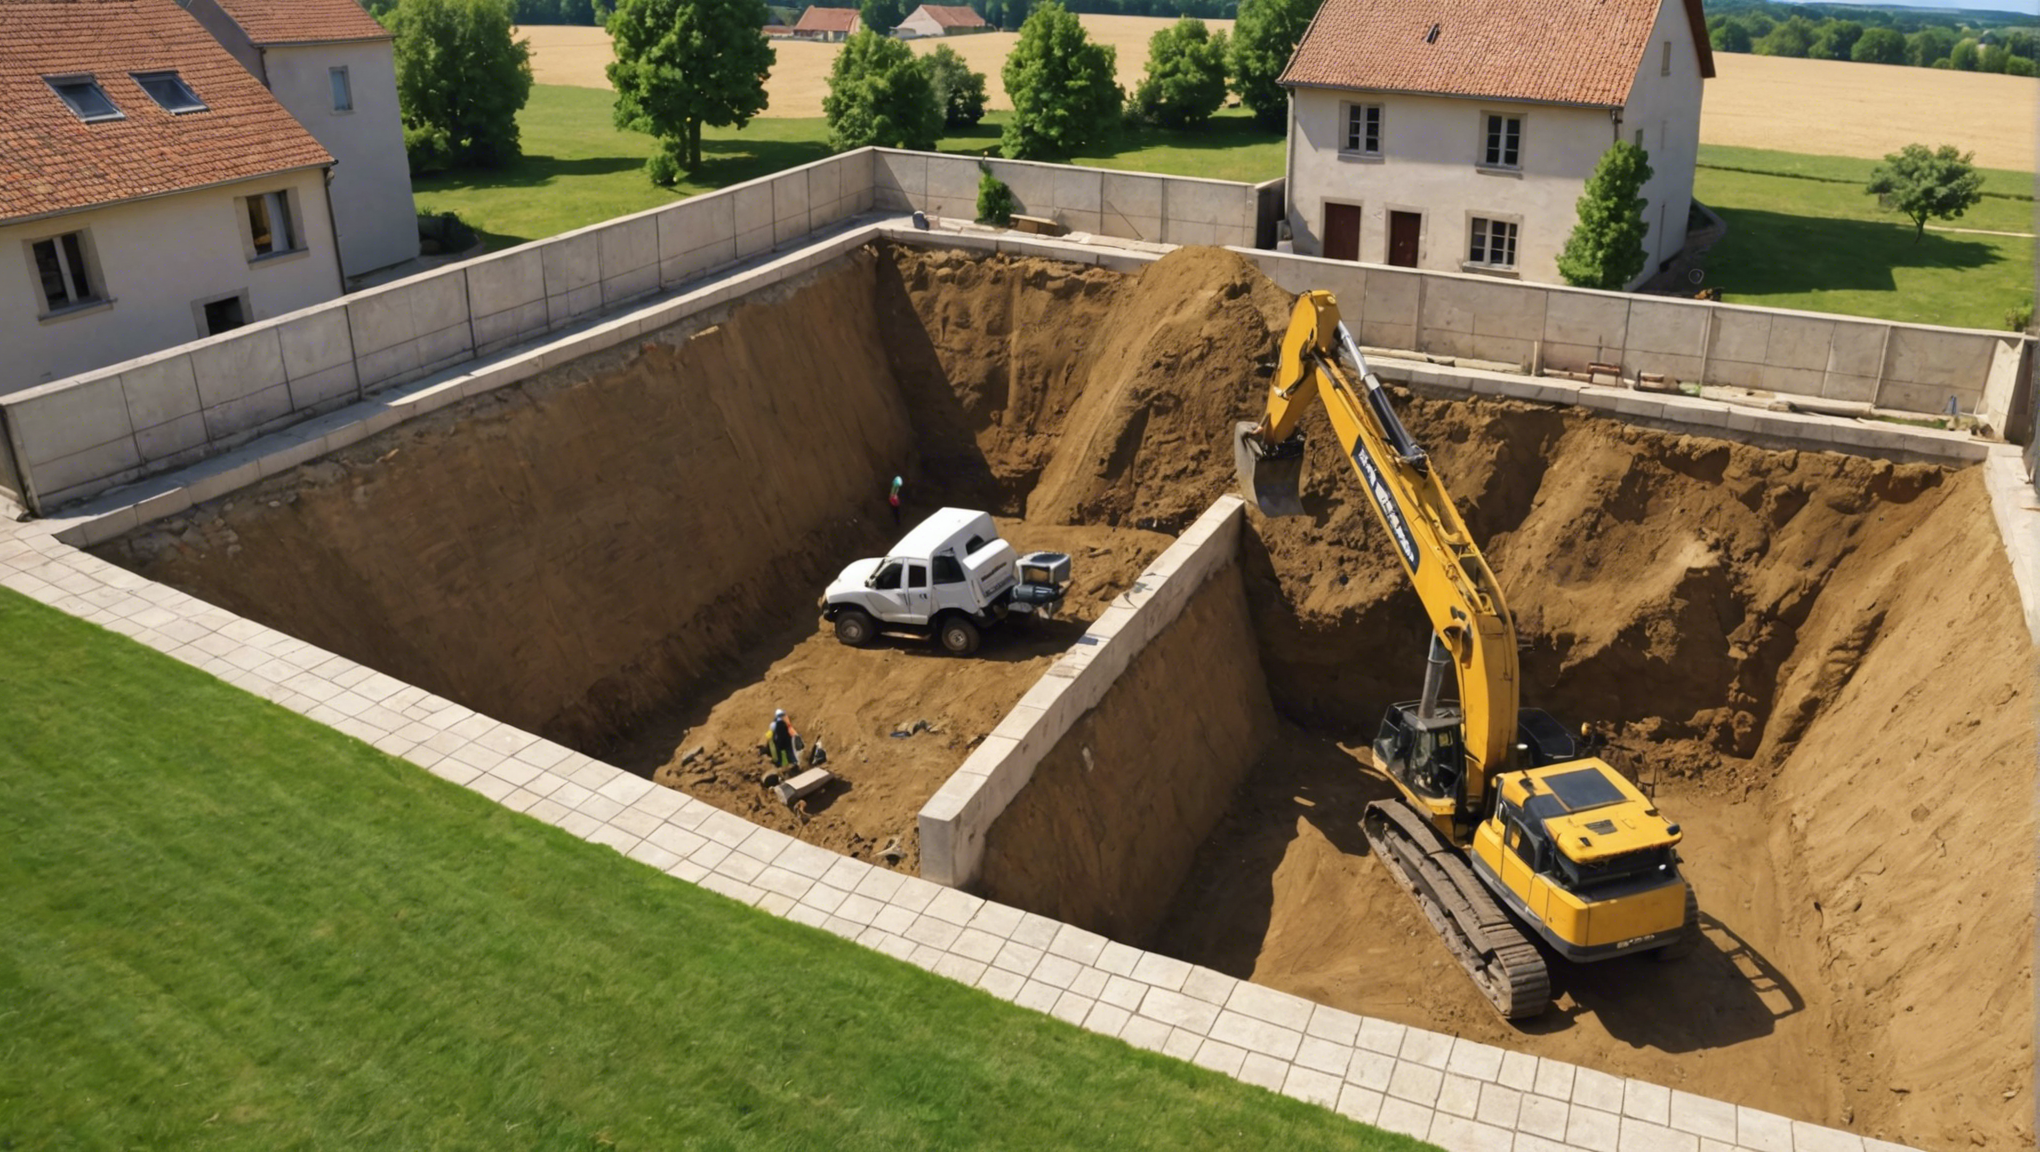 terrassement de maison à dijon : découvrez nos services de terrassement pour la construction de votre maison à dijon et ses environs.